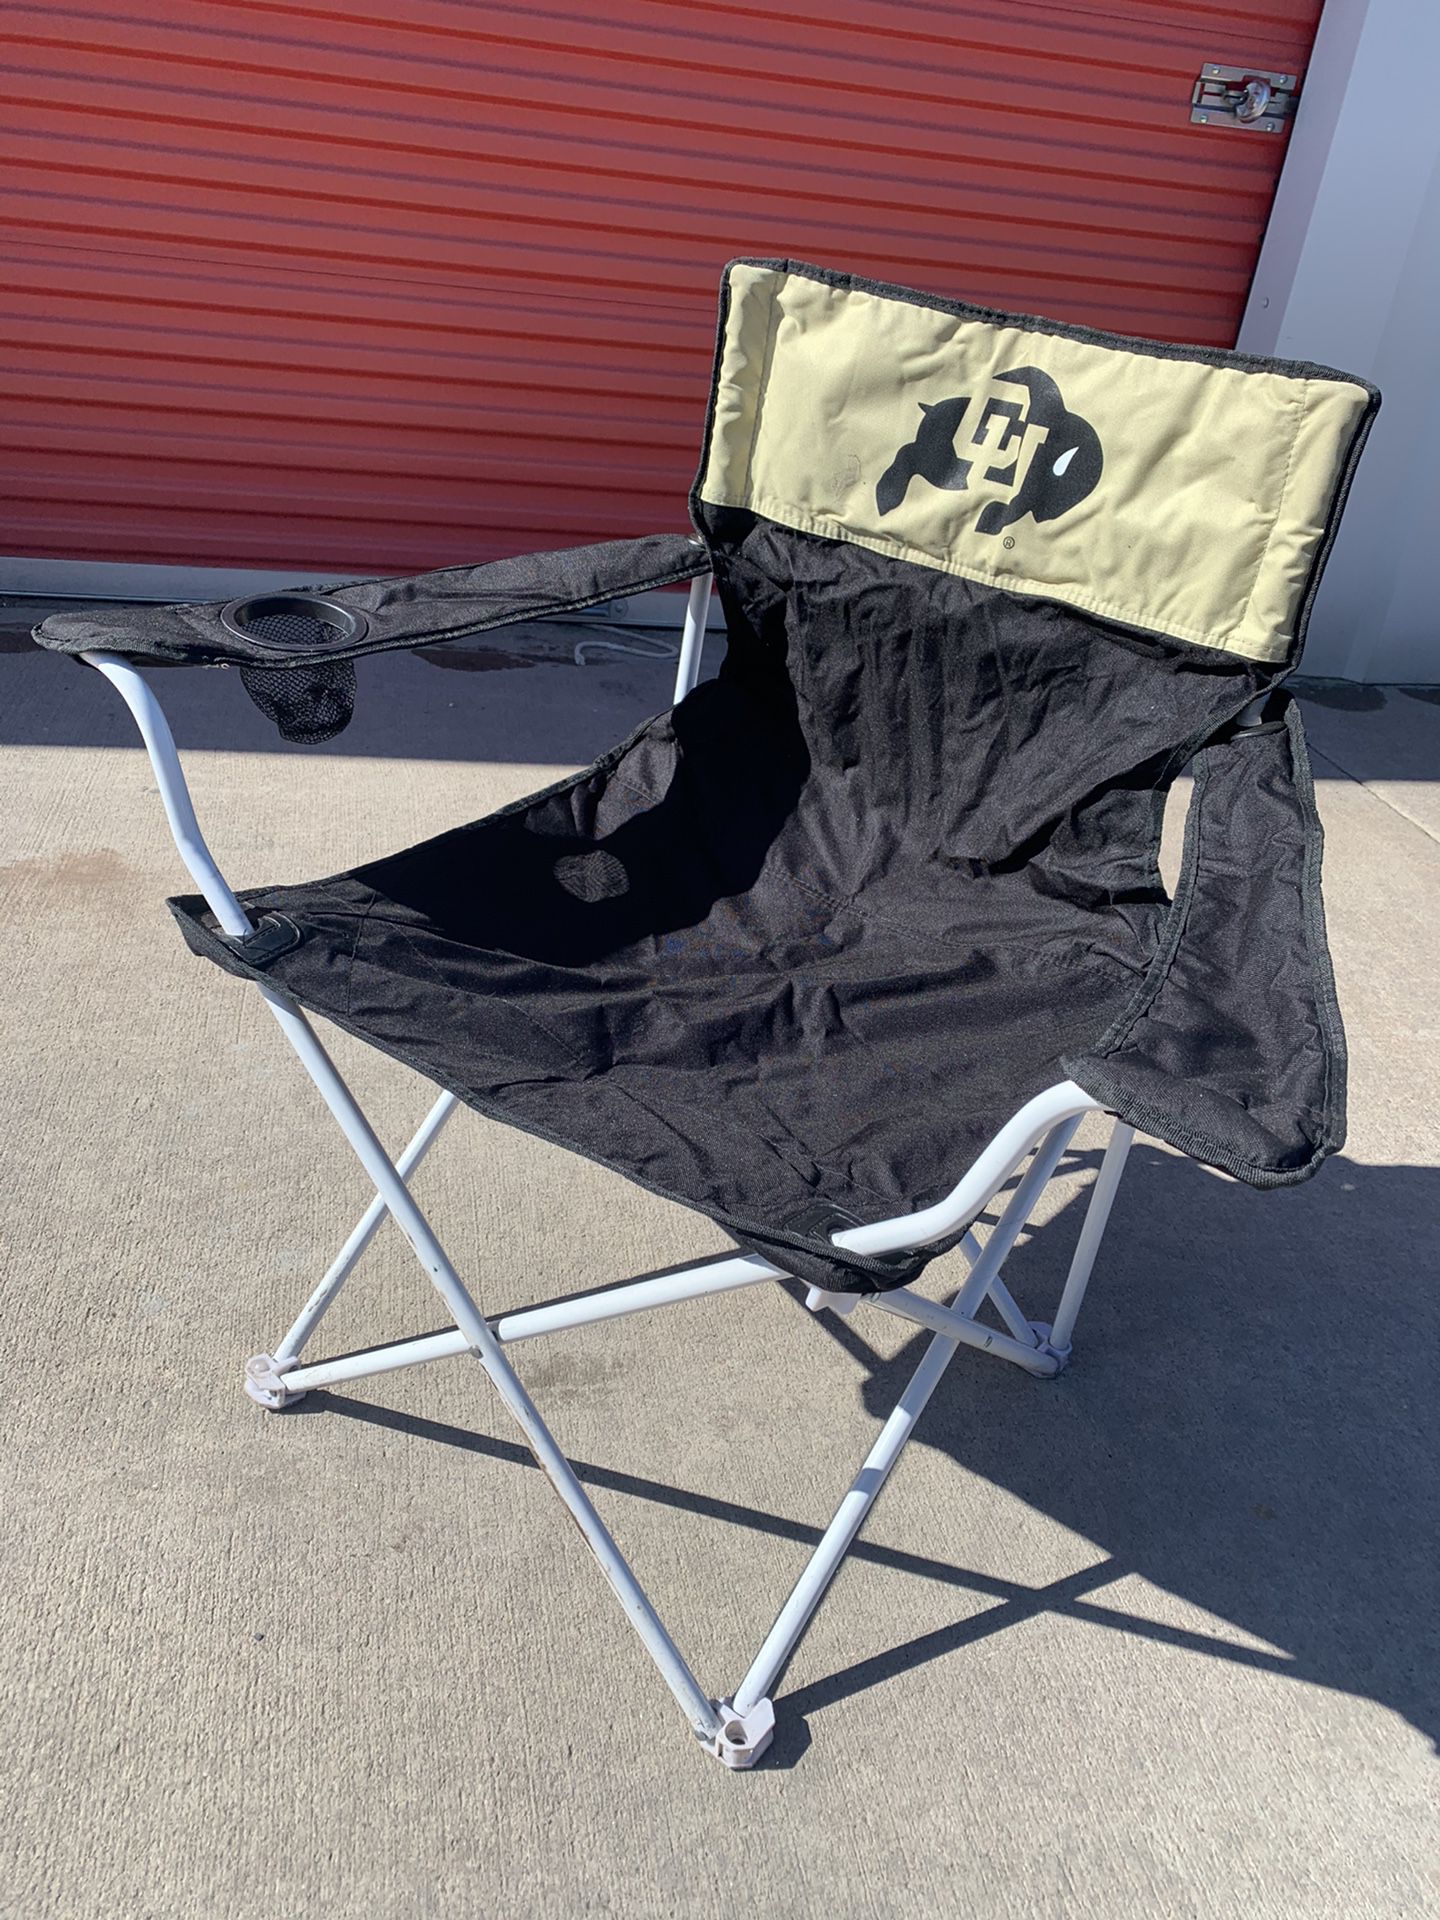 CU Camping chair